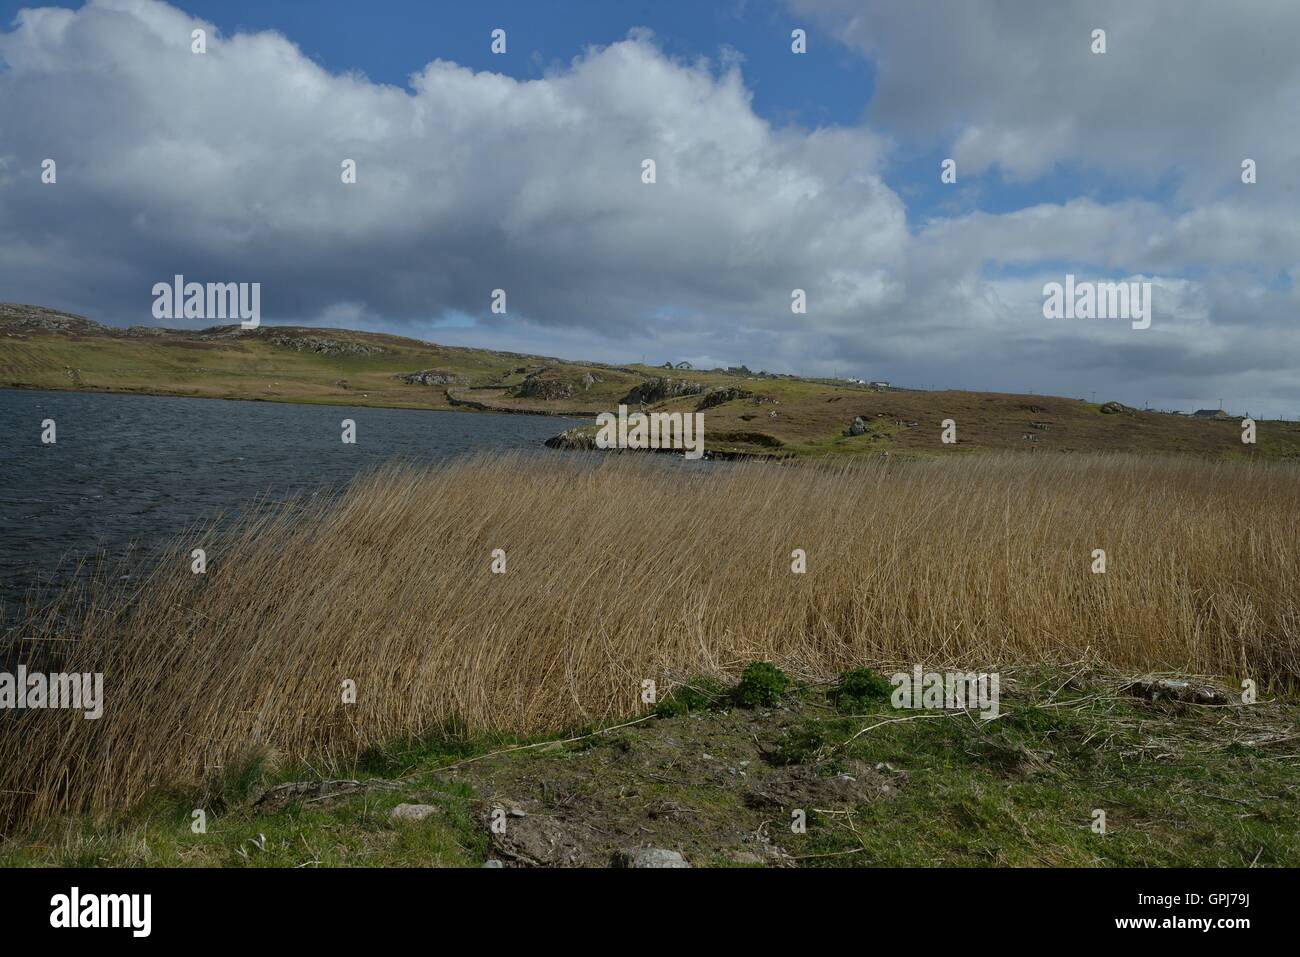 Inishbofin ist eine irische Insel in der Grafschaft Galway, 8 km von der Connemara Coast. - Île irlandaise située dans le Comté de Galway, Iuna isla Irlandesa.. Stockfoto